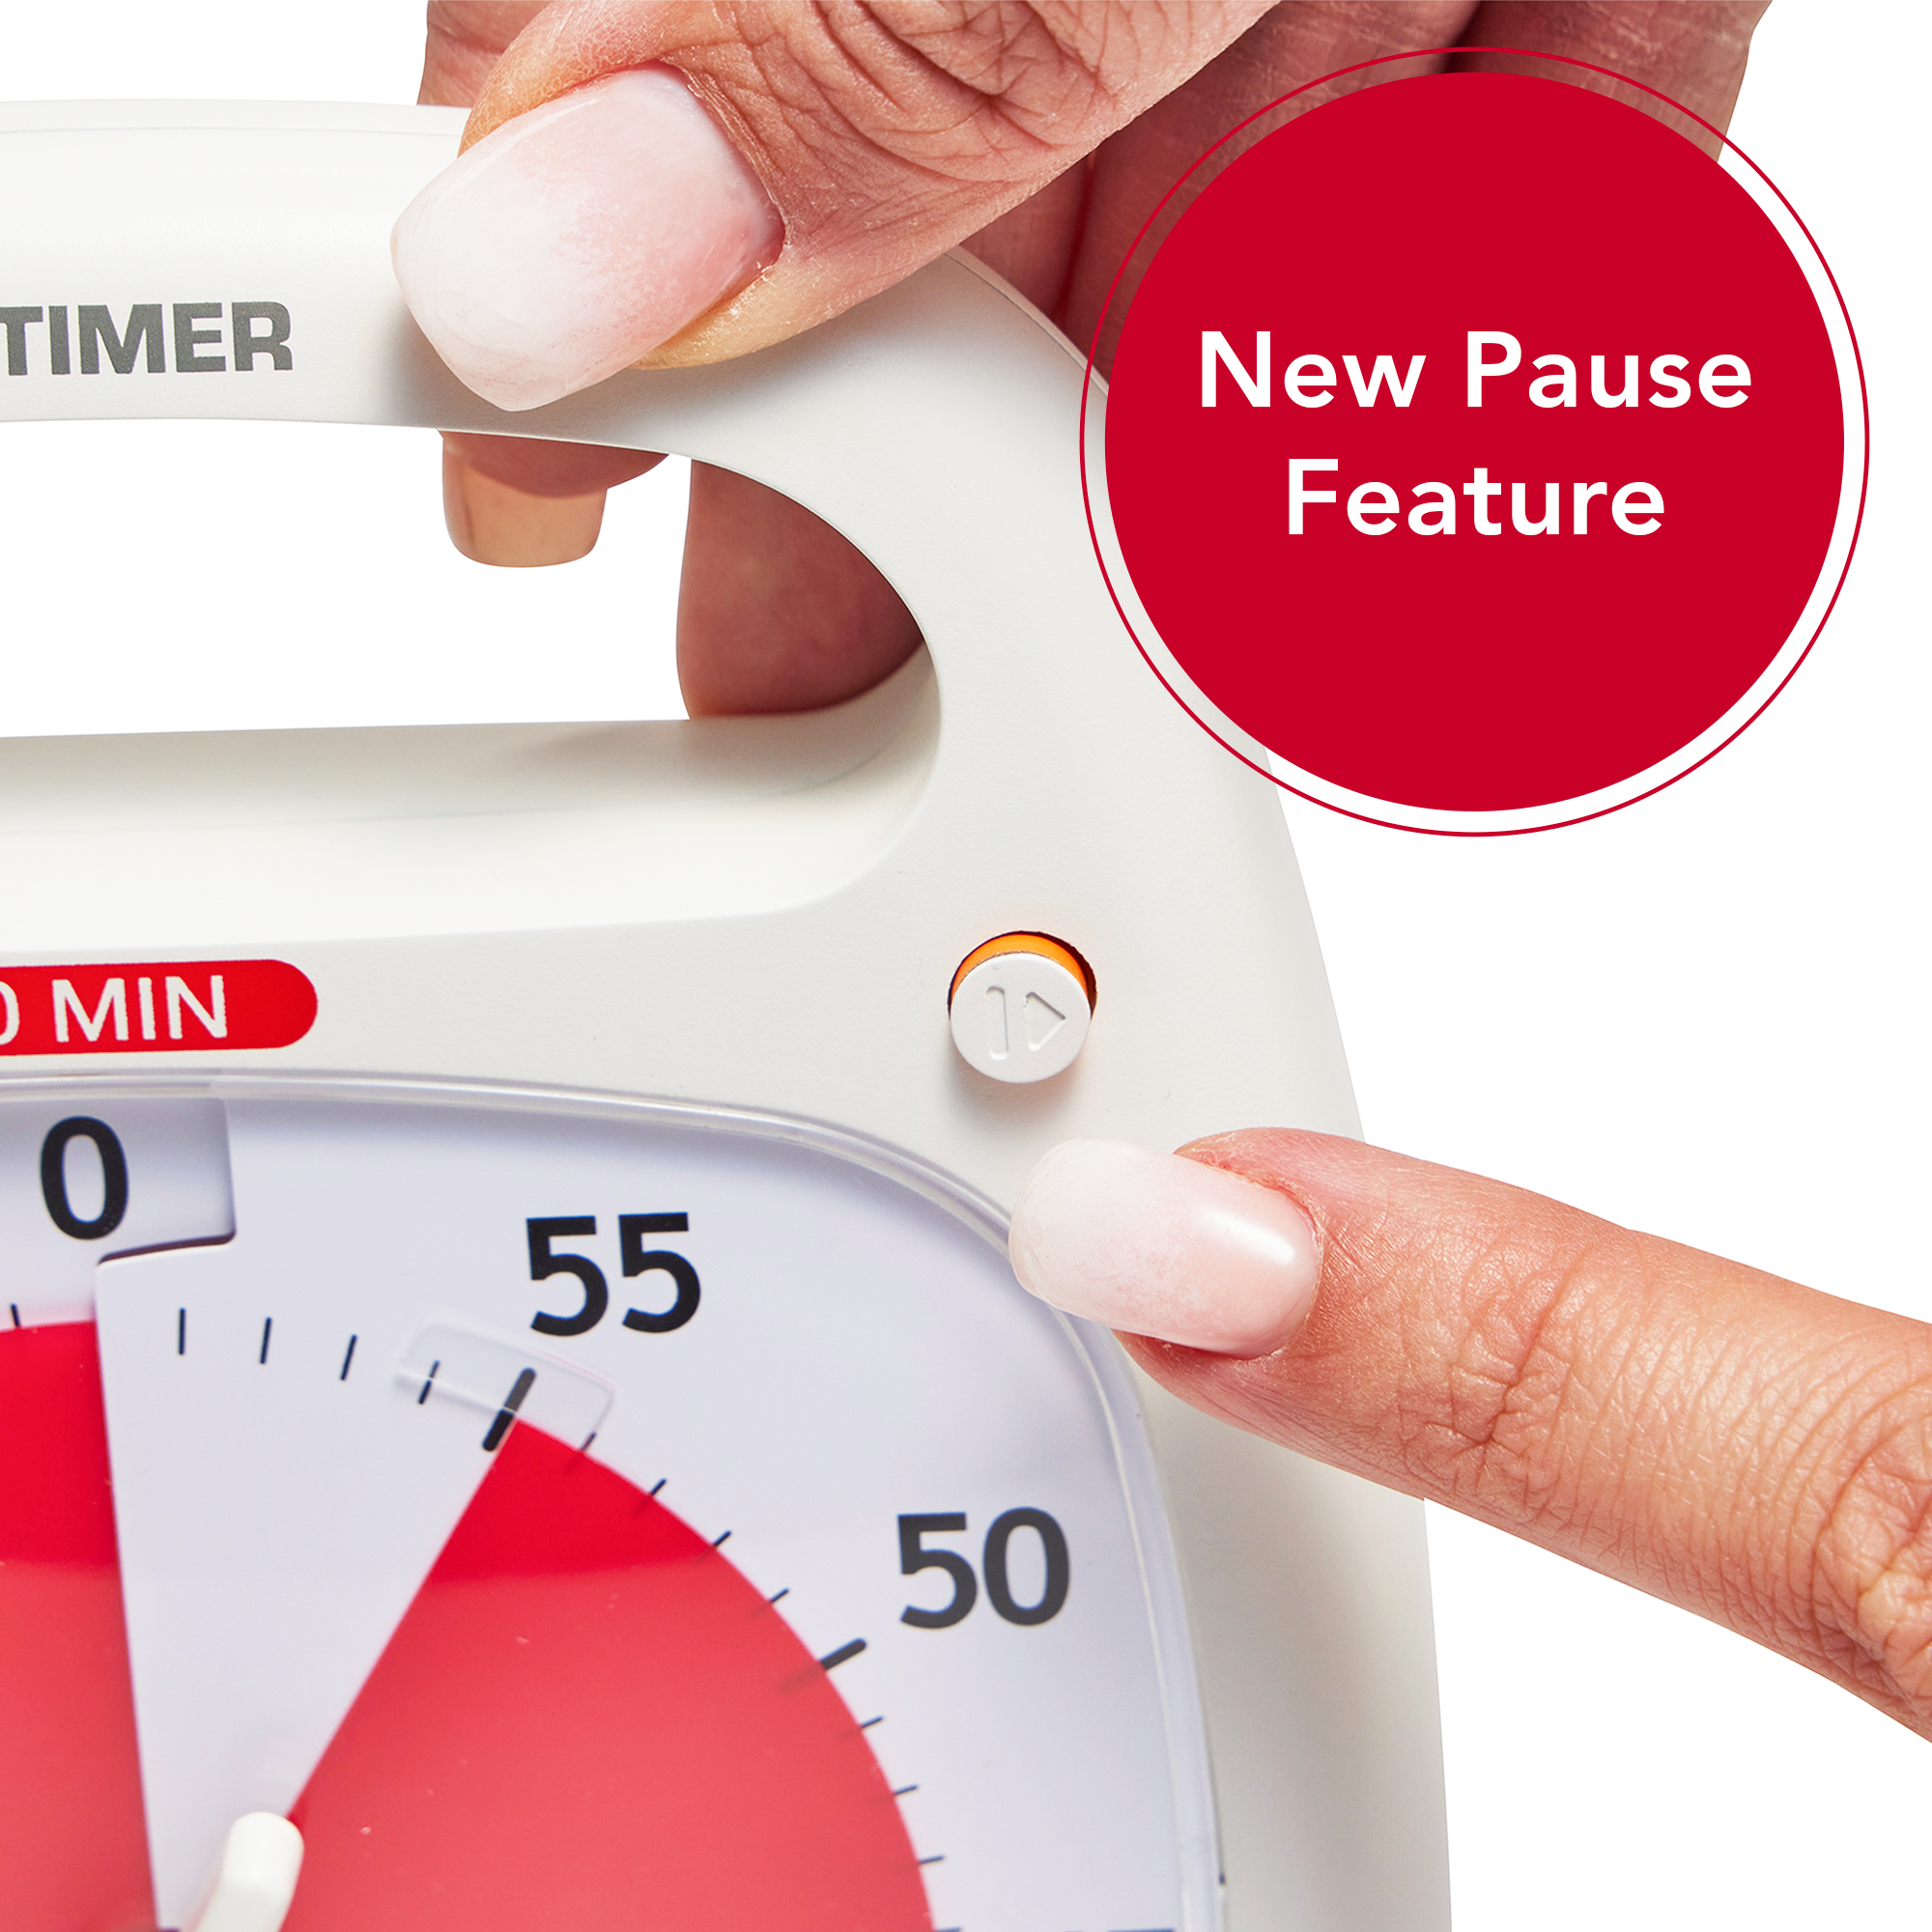 Nuevo Time Timer Plus para controlar visualmente el tiempo. – Aulautista